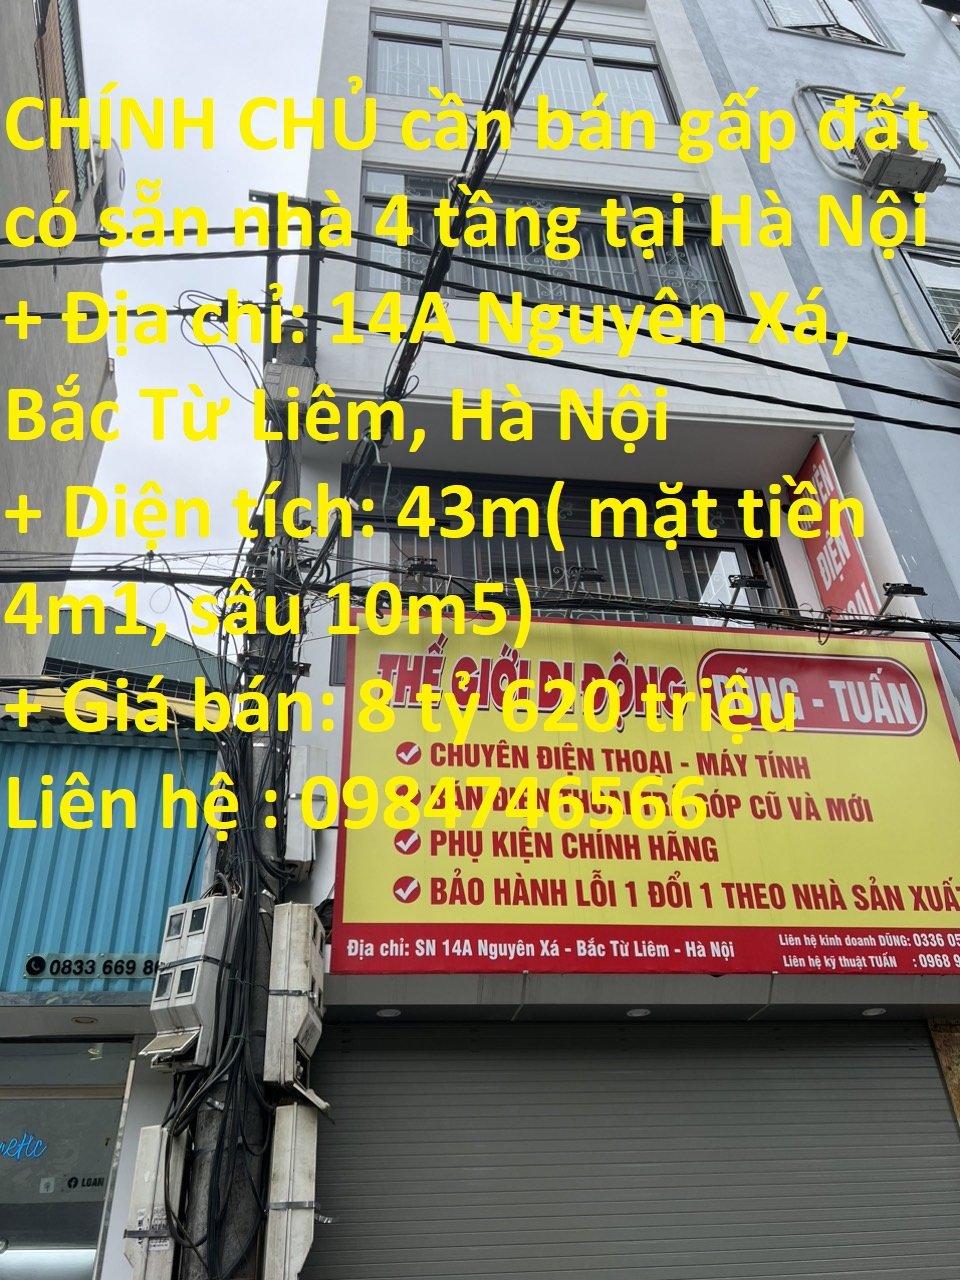 CHÍNH CHỦ cần bán gấp đất có sẵn nhà 4 tầng tại Hà Nội